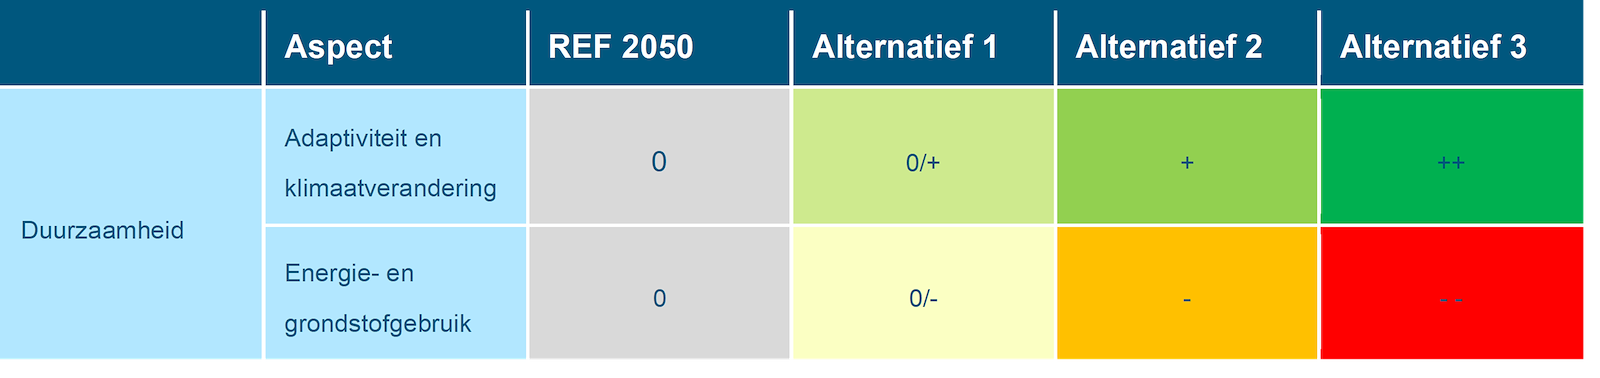 Deze tabel laat de totaalbeoordeling voor de milieueffecten van het beoordelingsaspect duurzaamheid zien voor de Rijntakken, voor de referentiesituatie en de drie alternatieven. Deze beoordeling is toegelicht in de tekst voorafgaande aan de tabel.